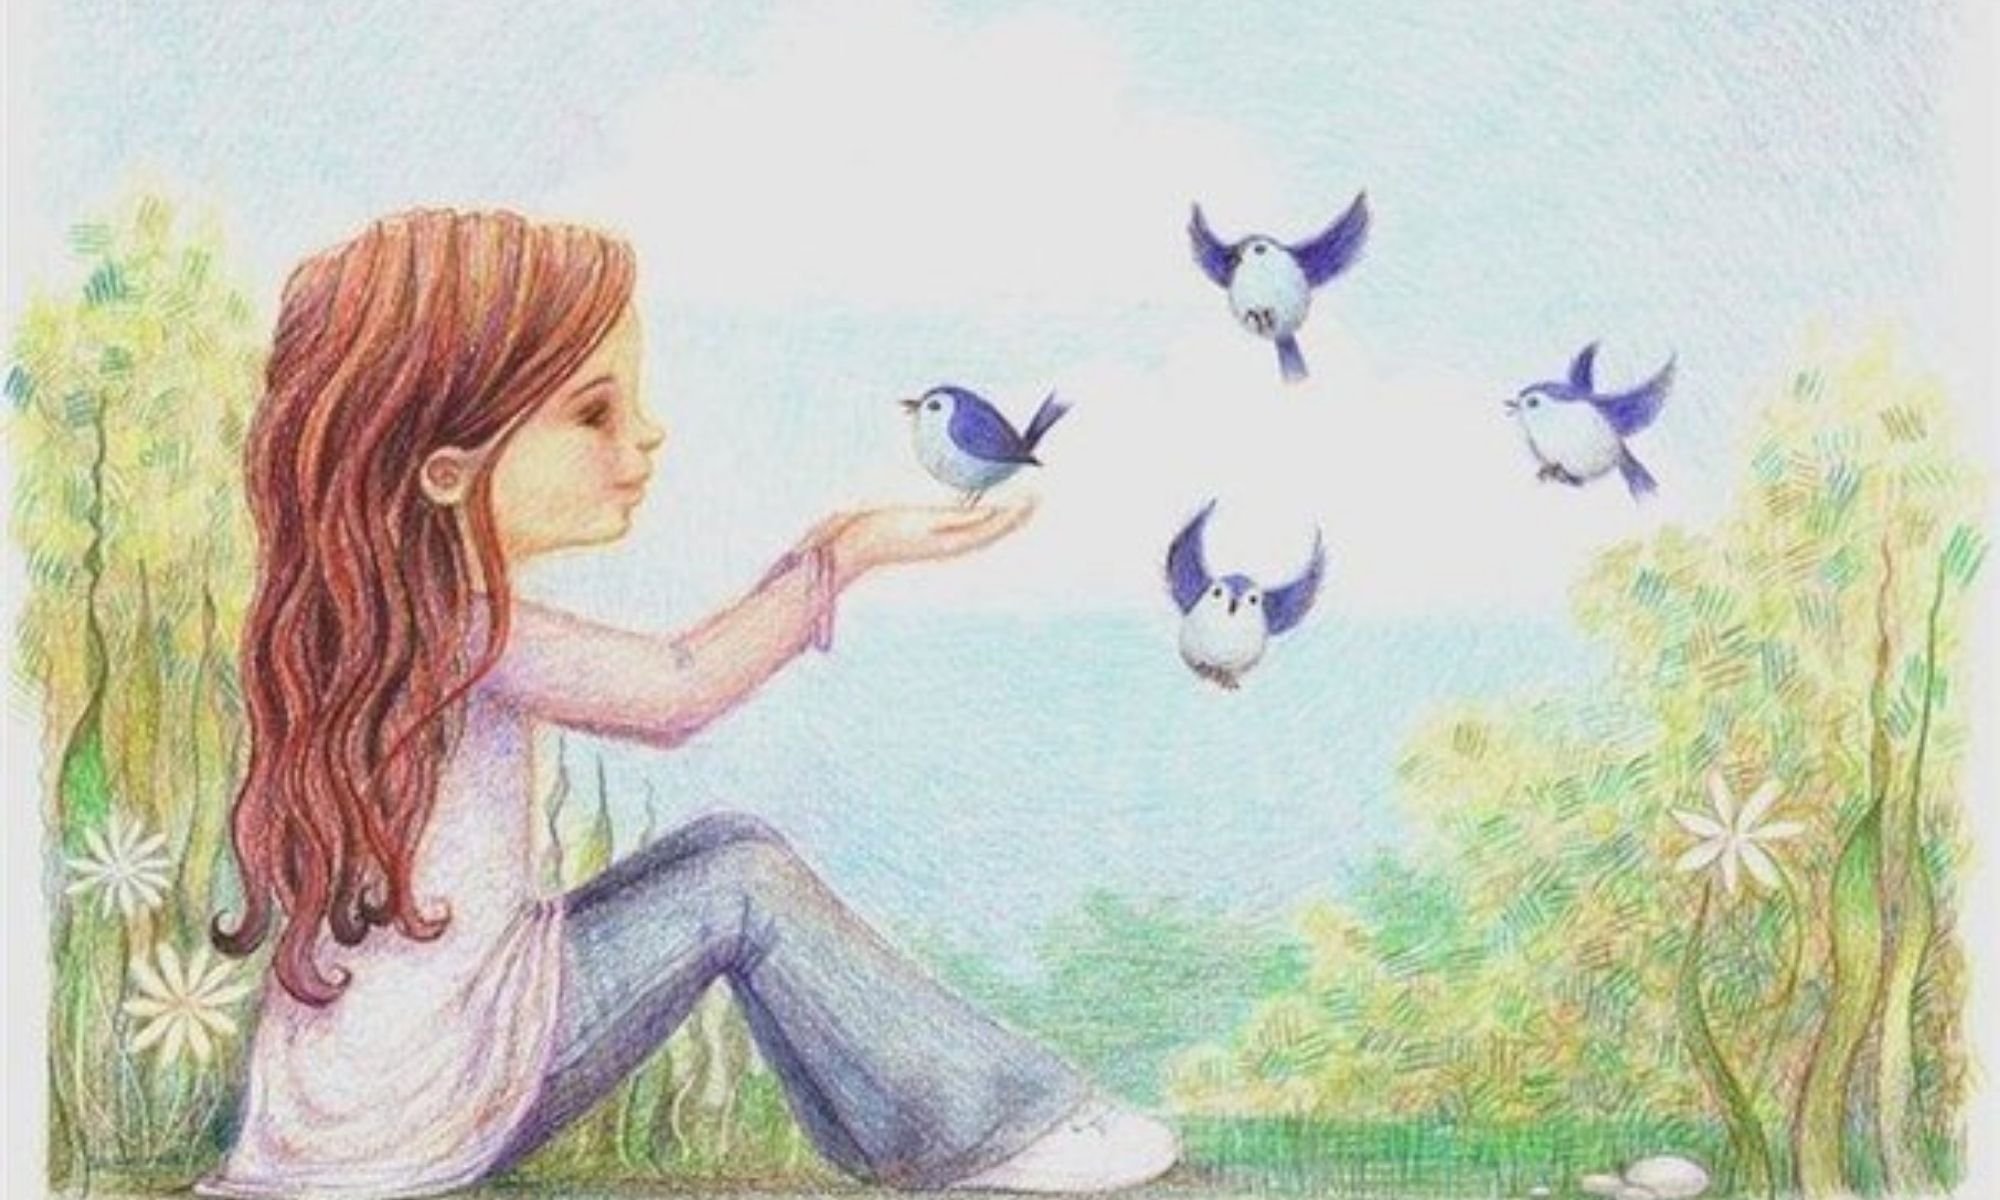 Я хочу видеть мир. Душевные рисунки. Девочка с птичкой. Добрые рисунки. Иллюстрации счастье.